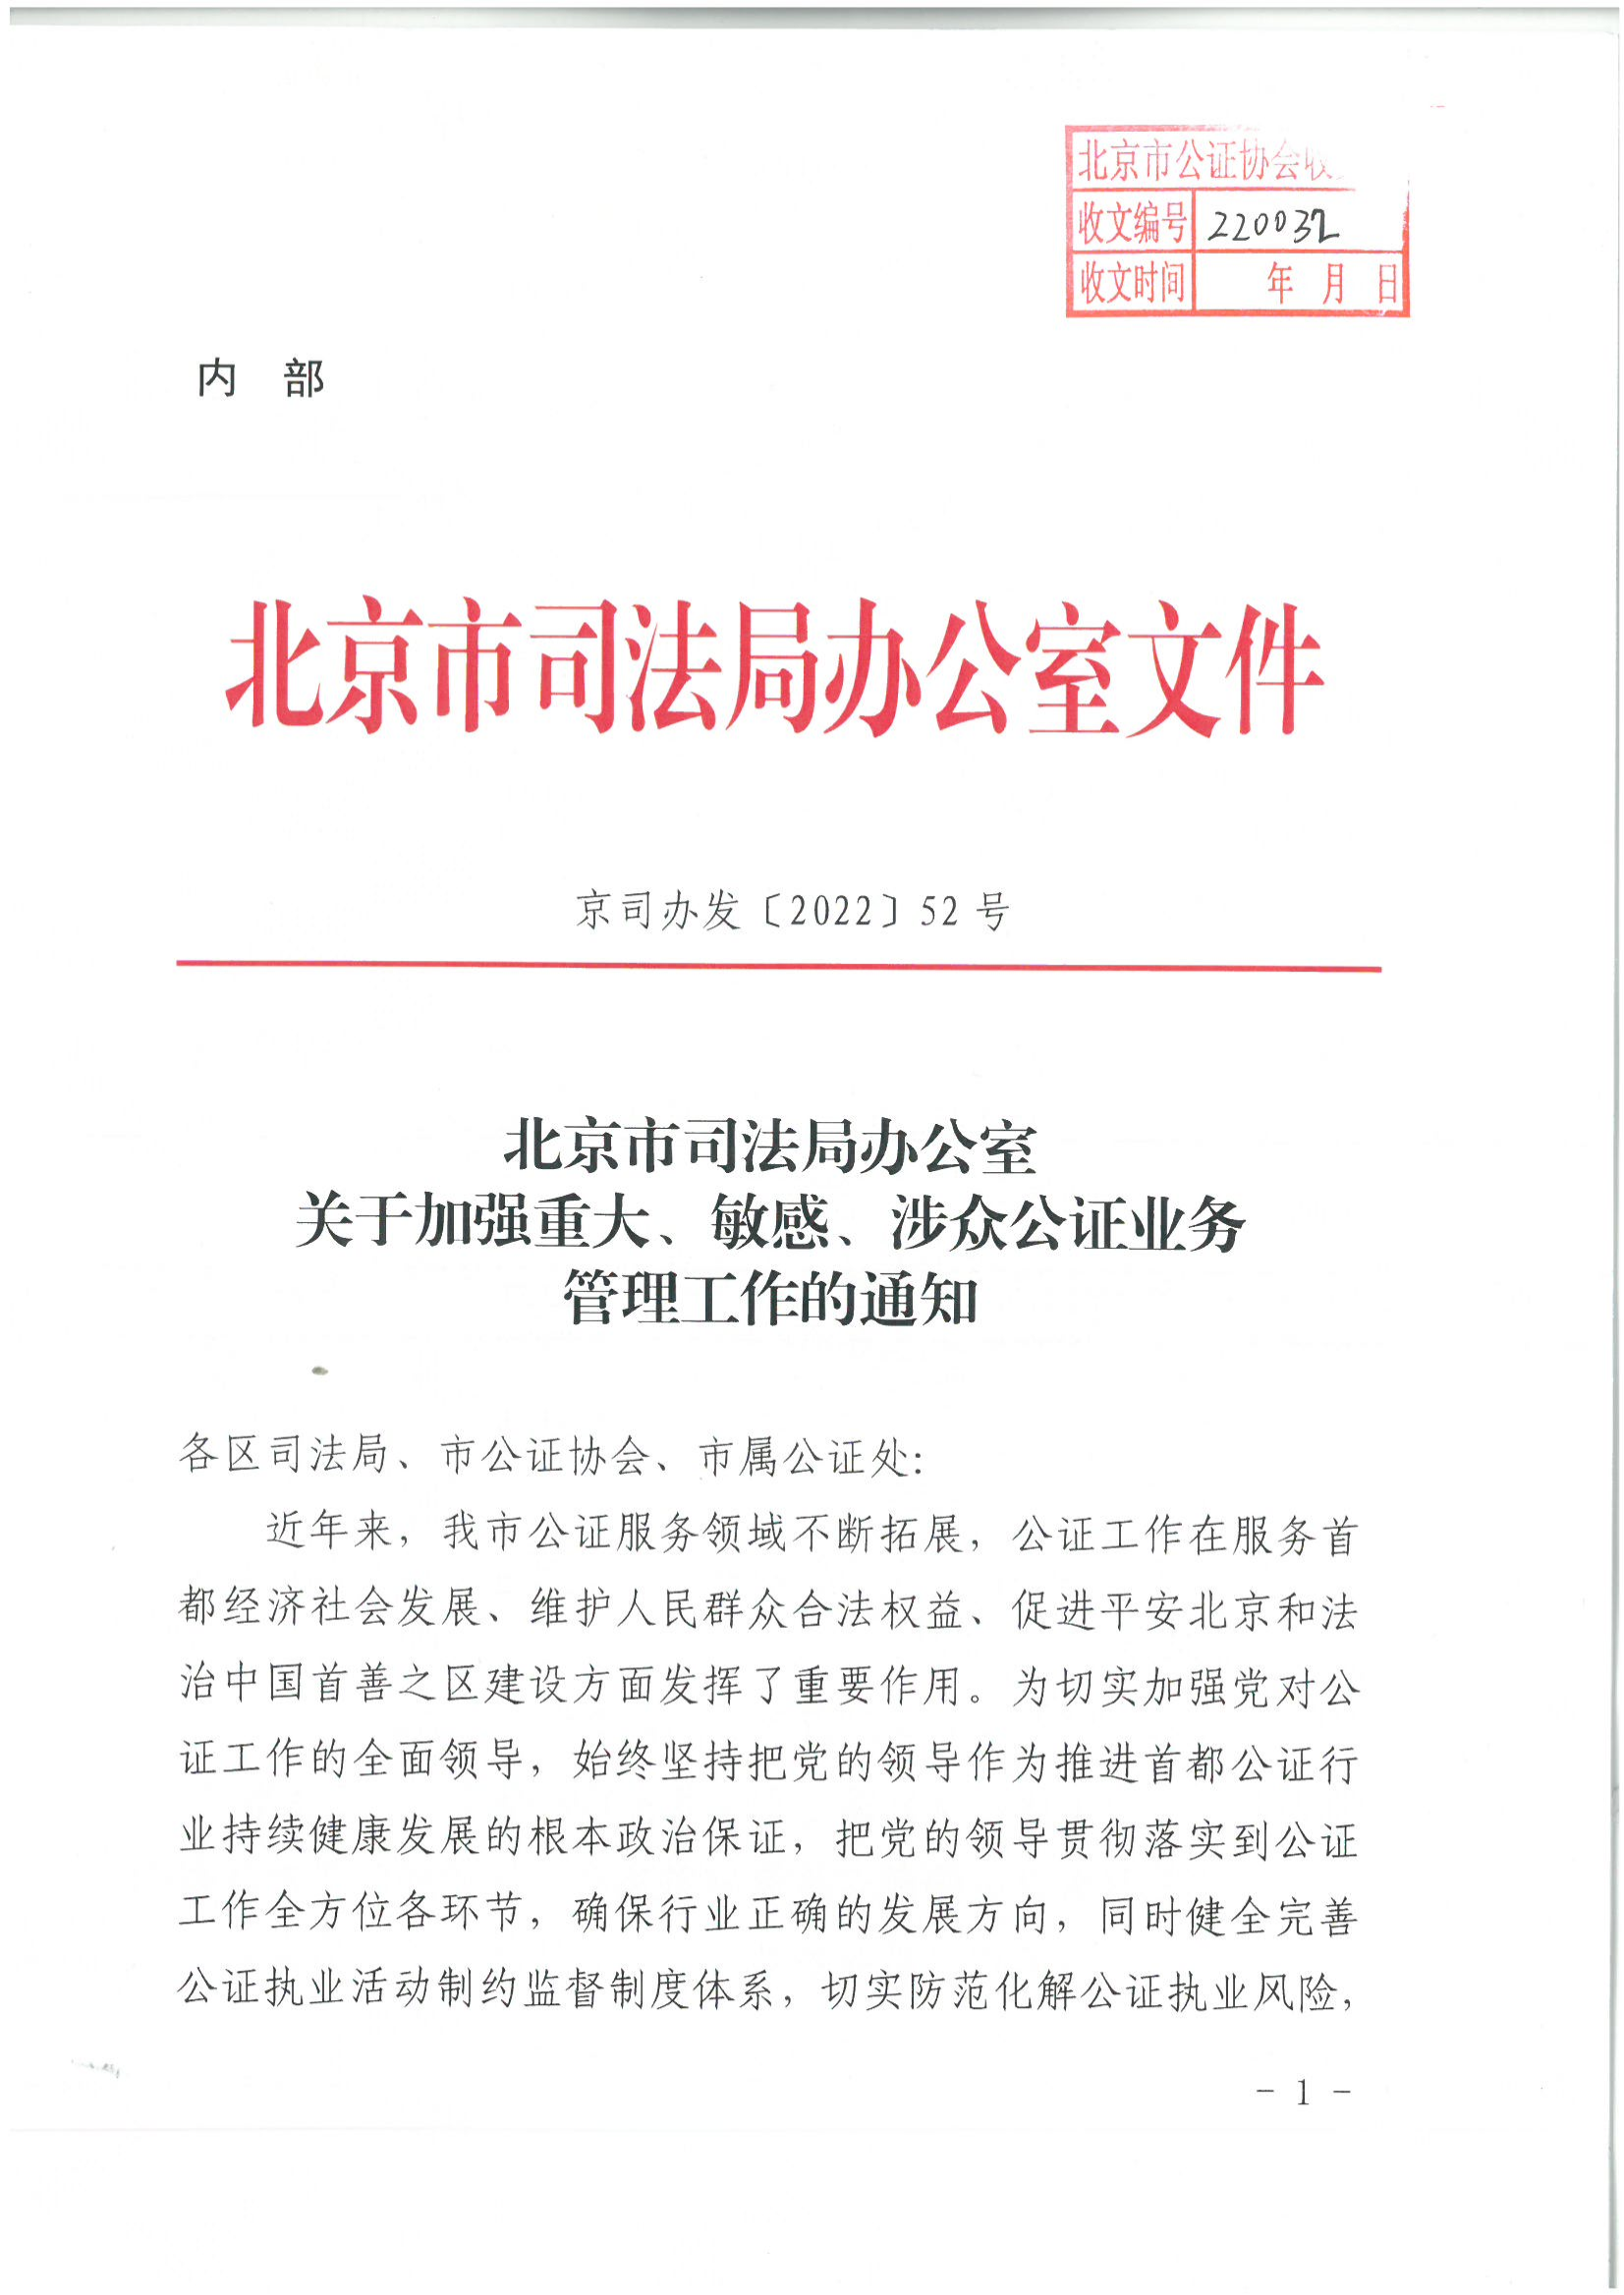 1北京市司法局办公室关于加强重大、敏感、涉众公证业务管理工作的通知_00